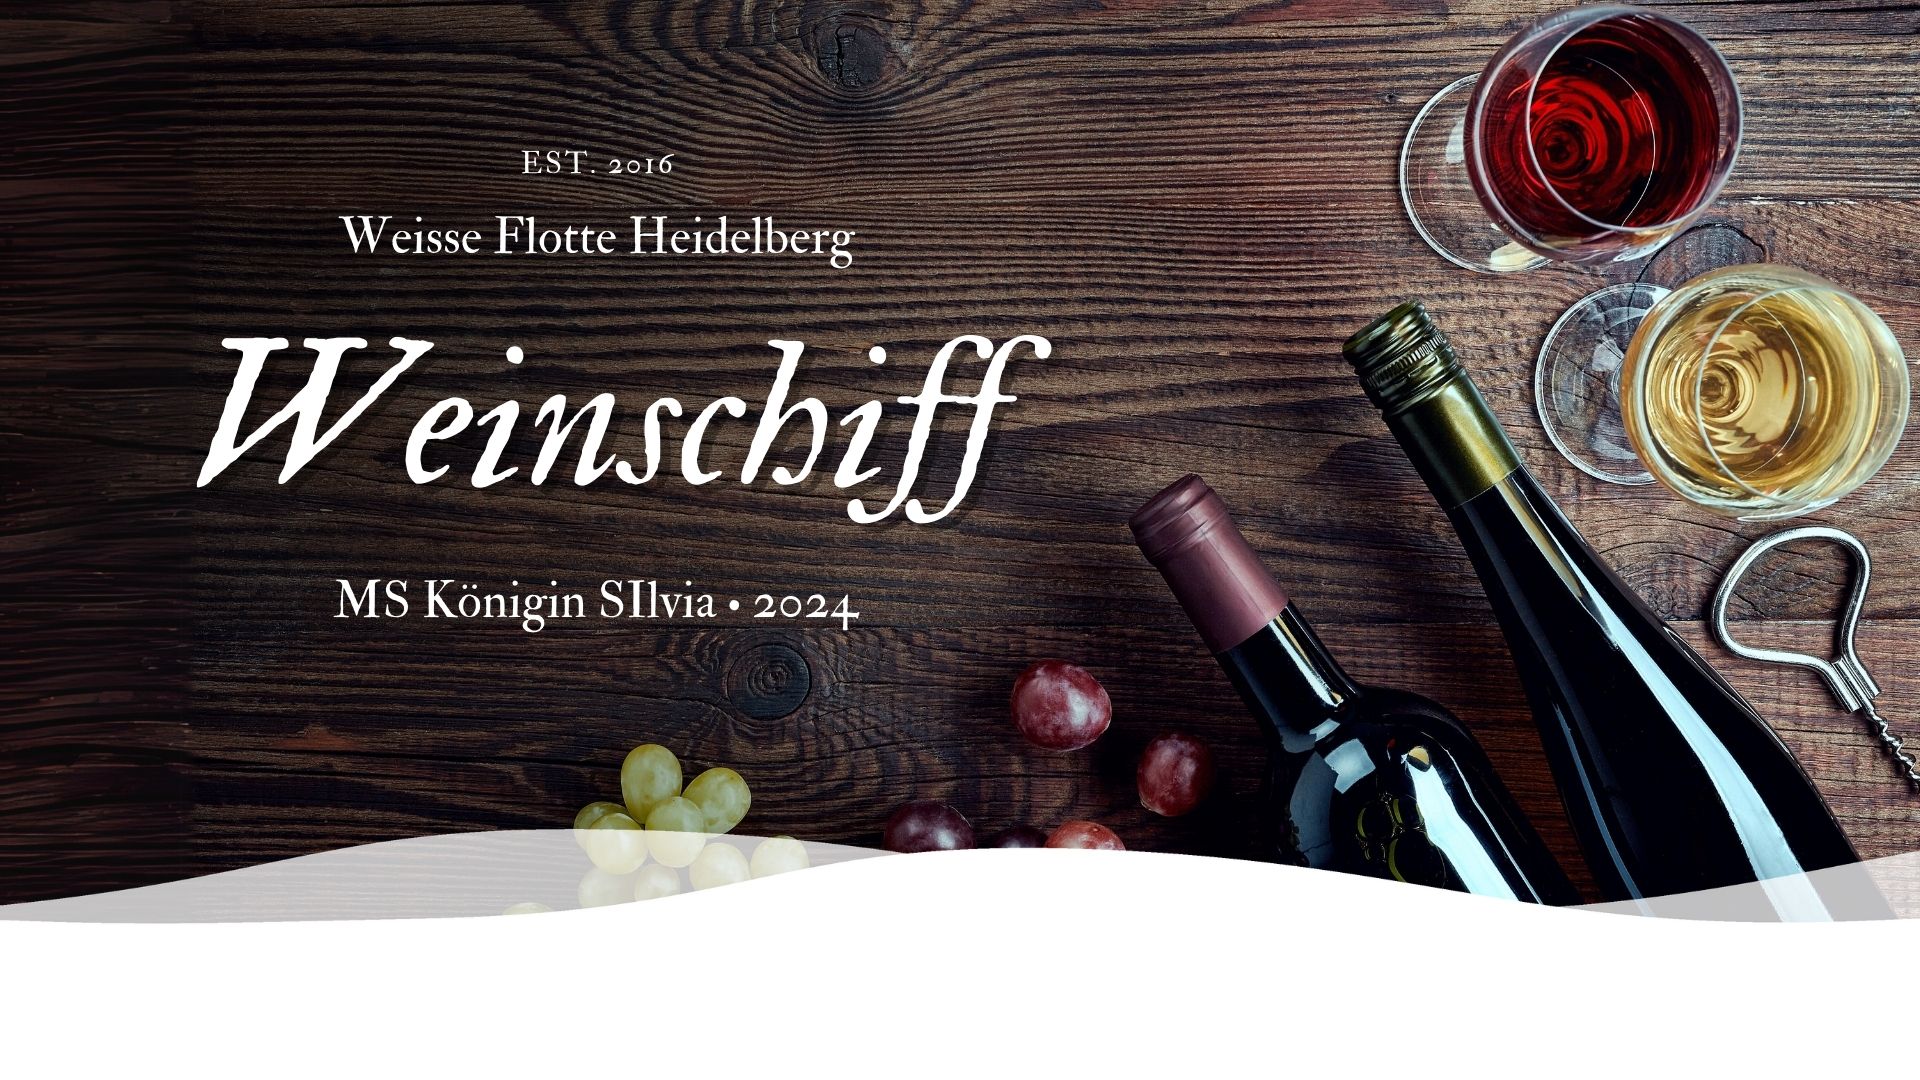 Wein Schiff 1 • Weisse Flotte Heidelberg